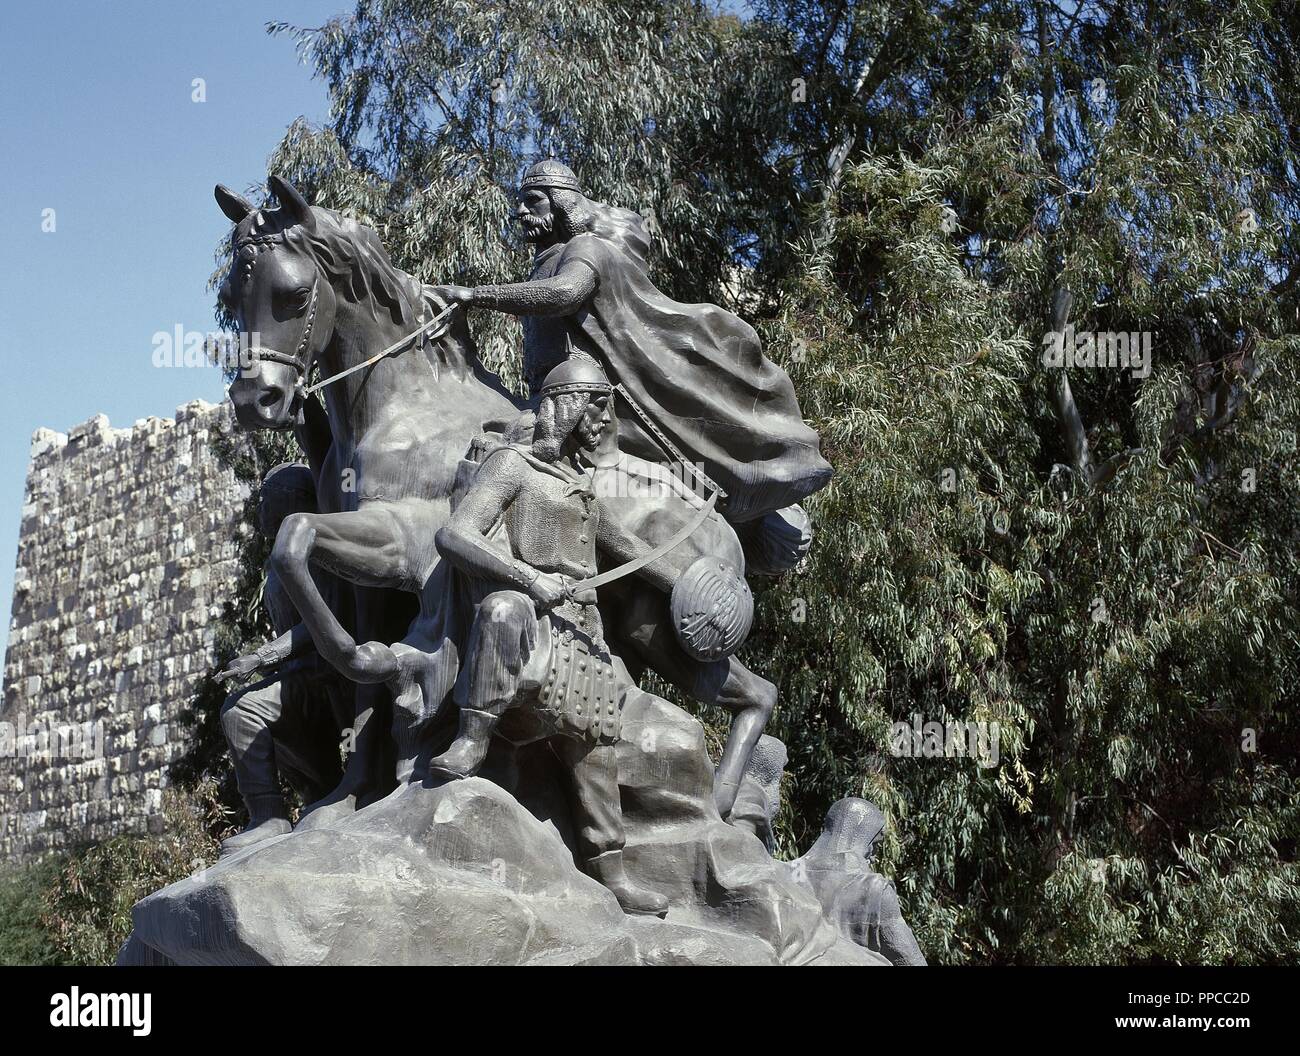 Le Saladin Turk (1138-1193). Premier Sultan d'Égypte et la Syrie. Statue équestre en face de la Citadelle. Par Abdallah al-Sayed, 1993. Damas. La Syrie. Banque D'Images